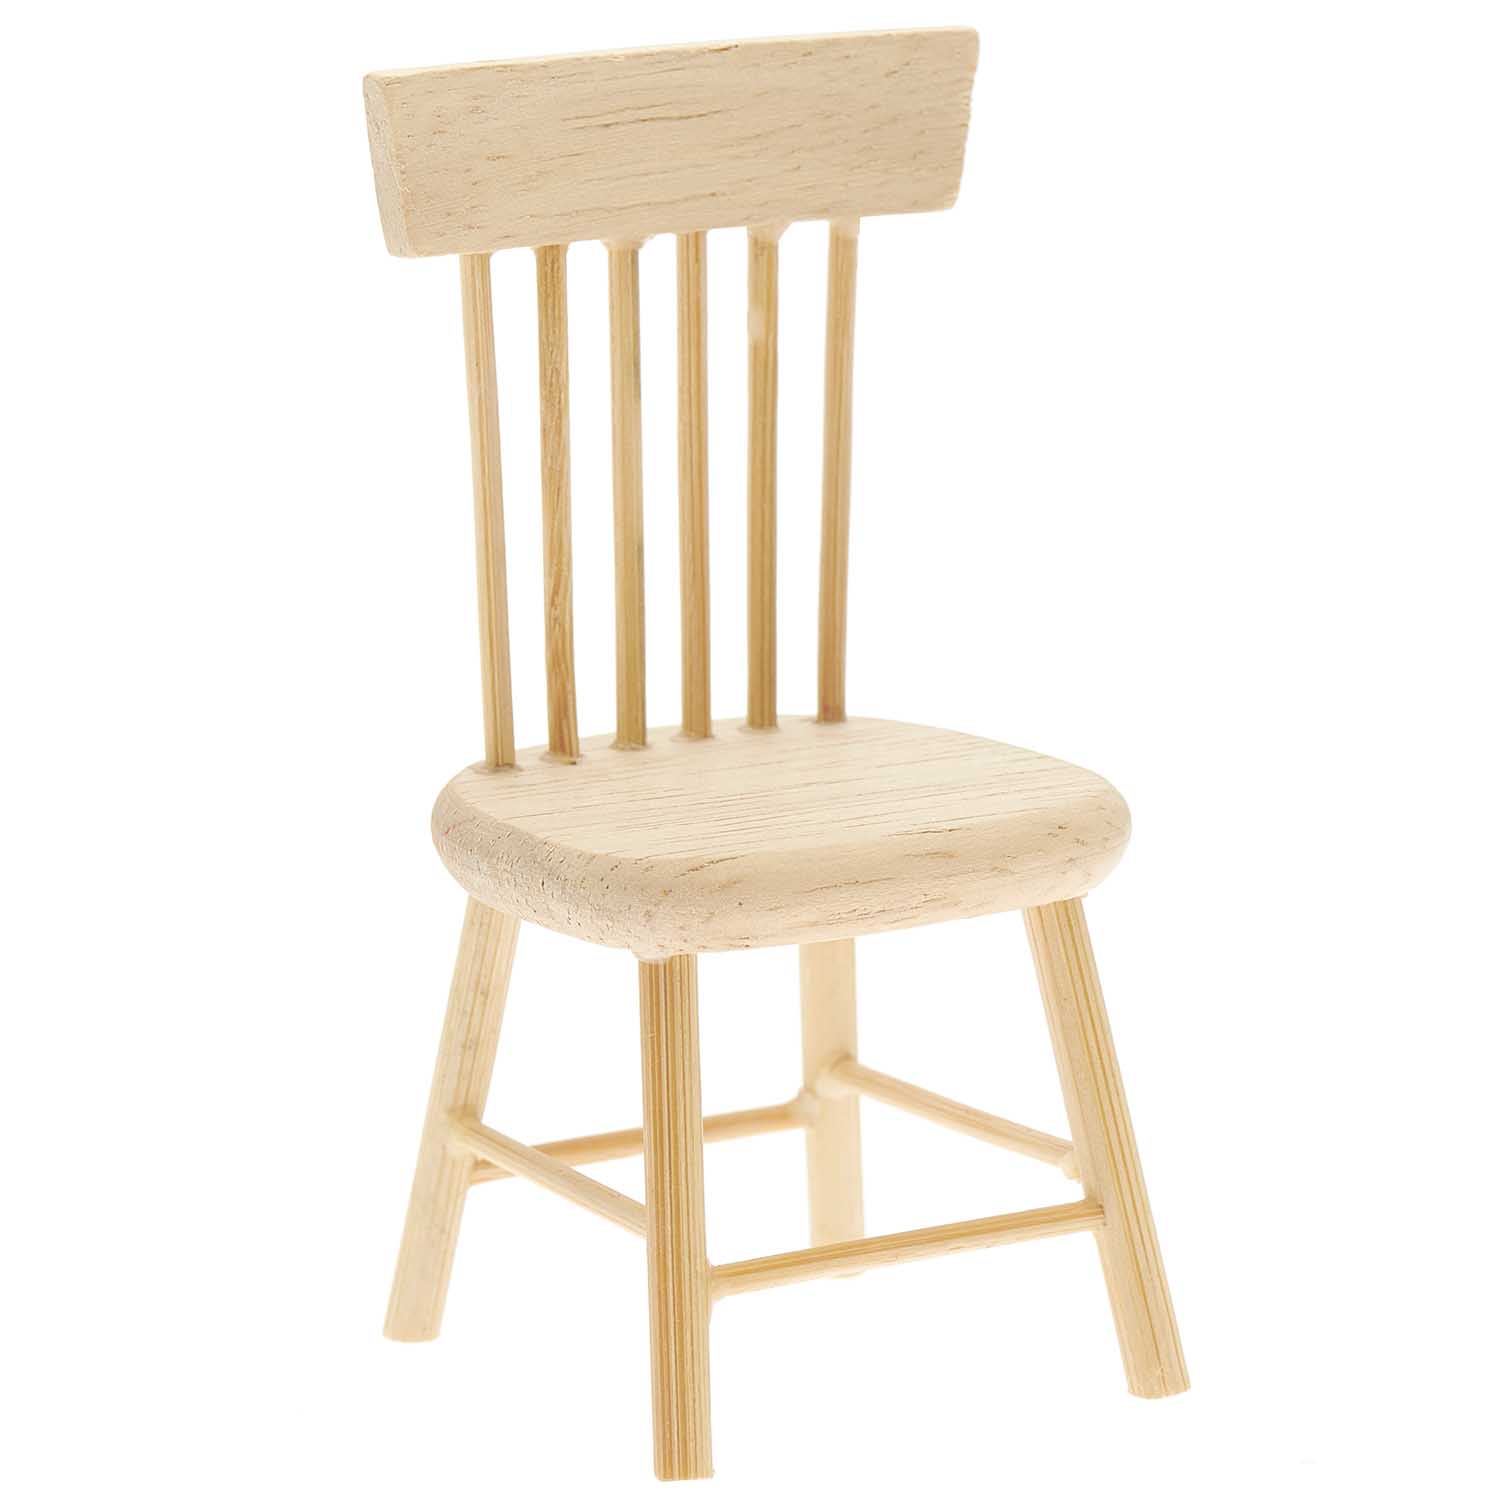 Skandinavischer Miniatur Stuhl als Zubehör für die Wichtelwelt, 4,5x4x8,5cm